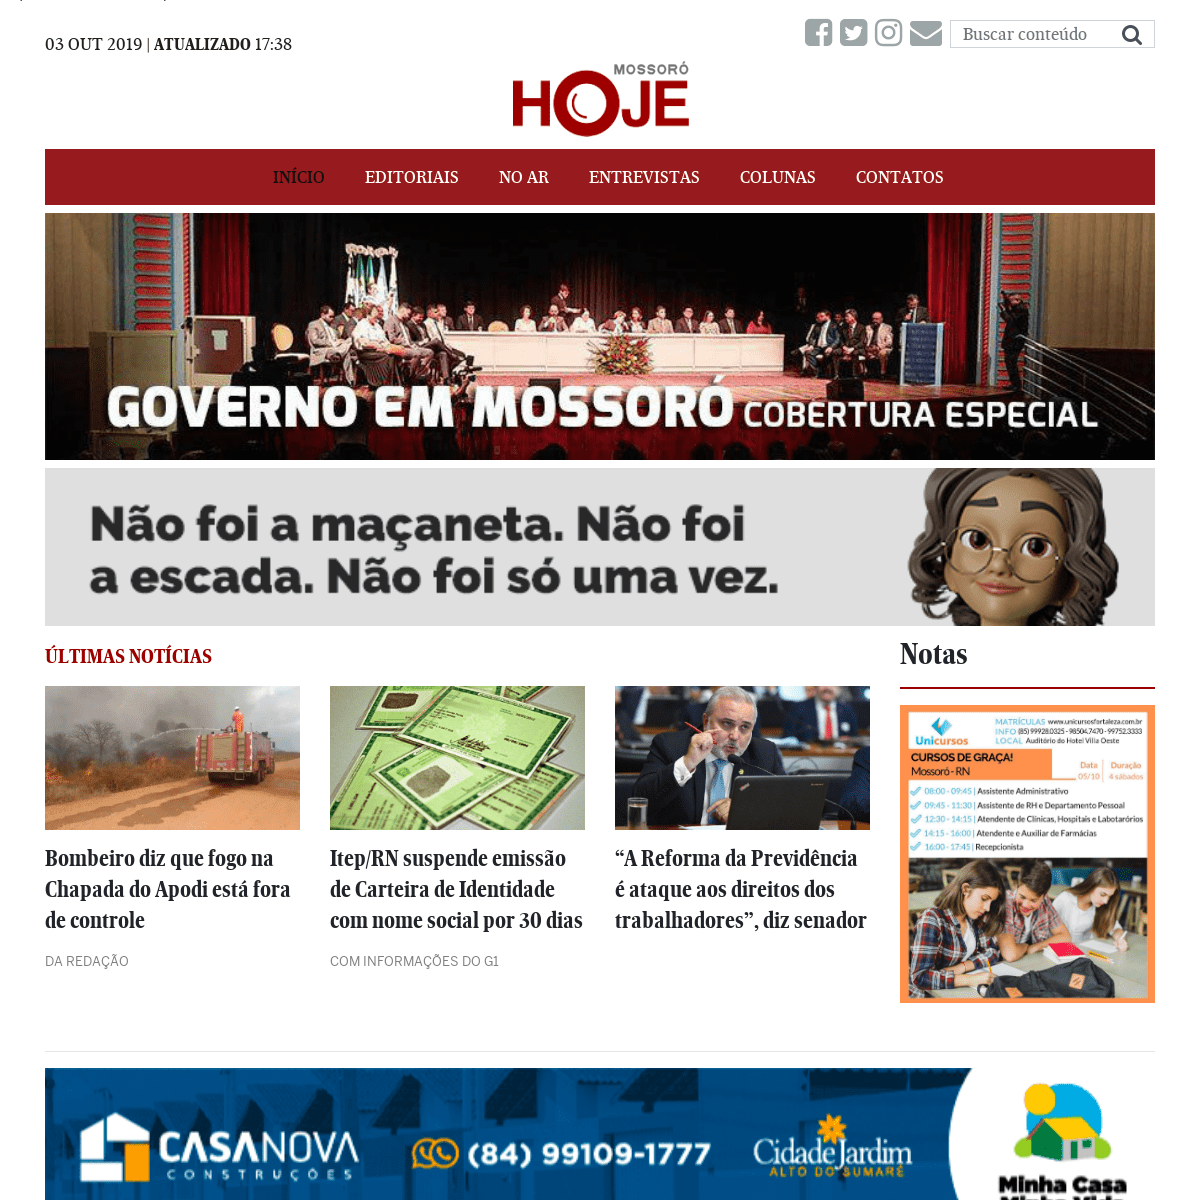  Mossoró Hoje - O portal de notícias de Mossoró